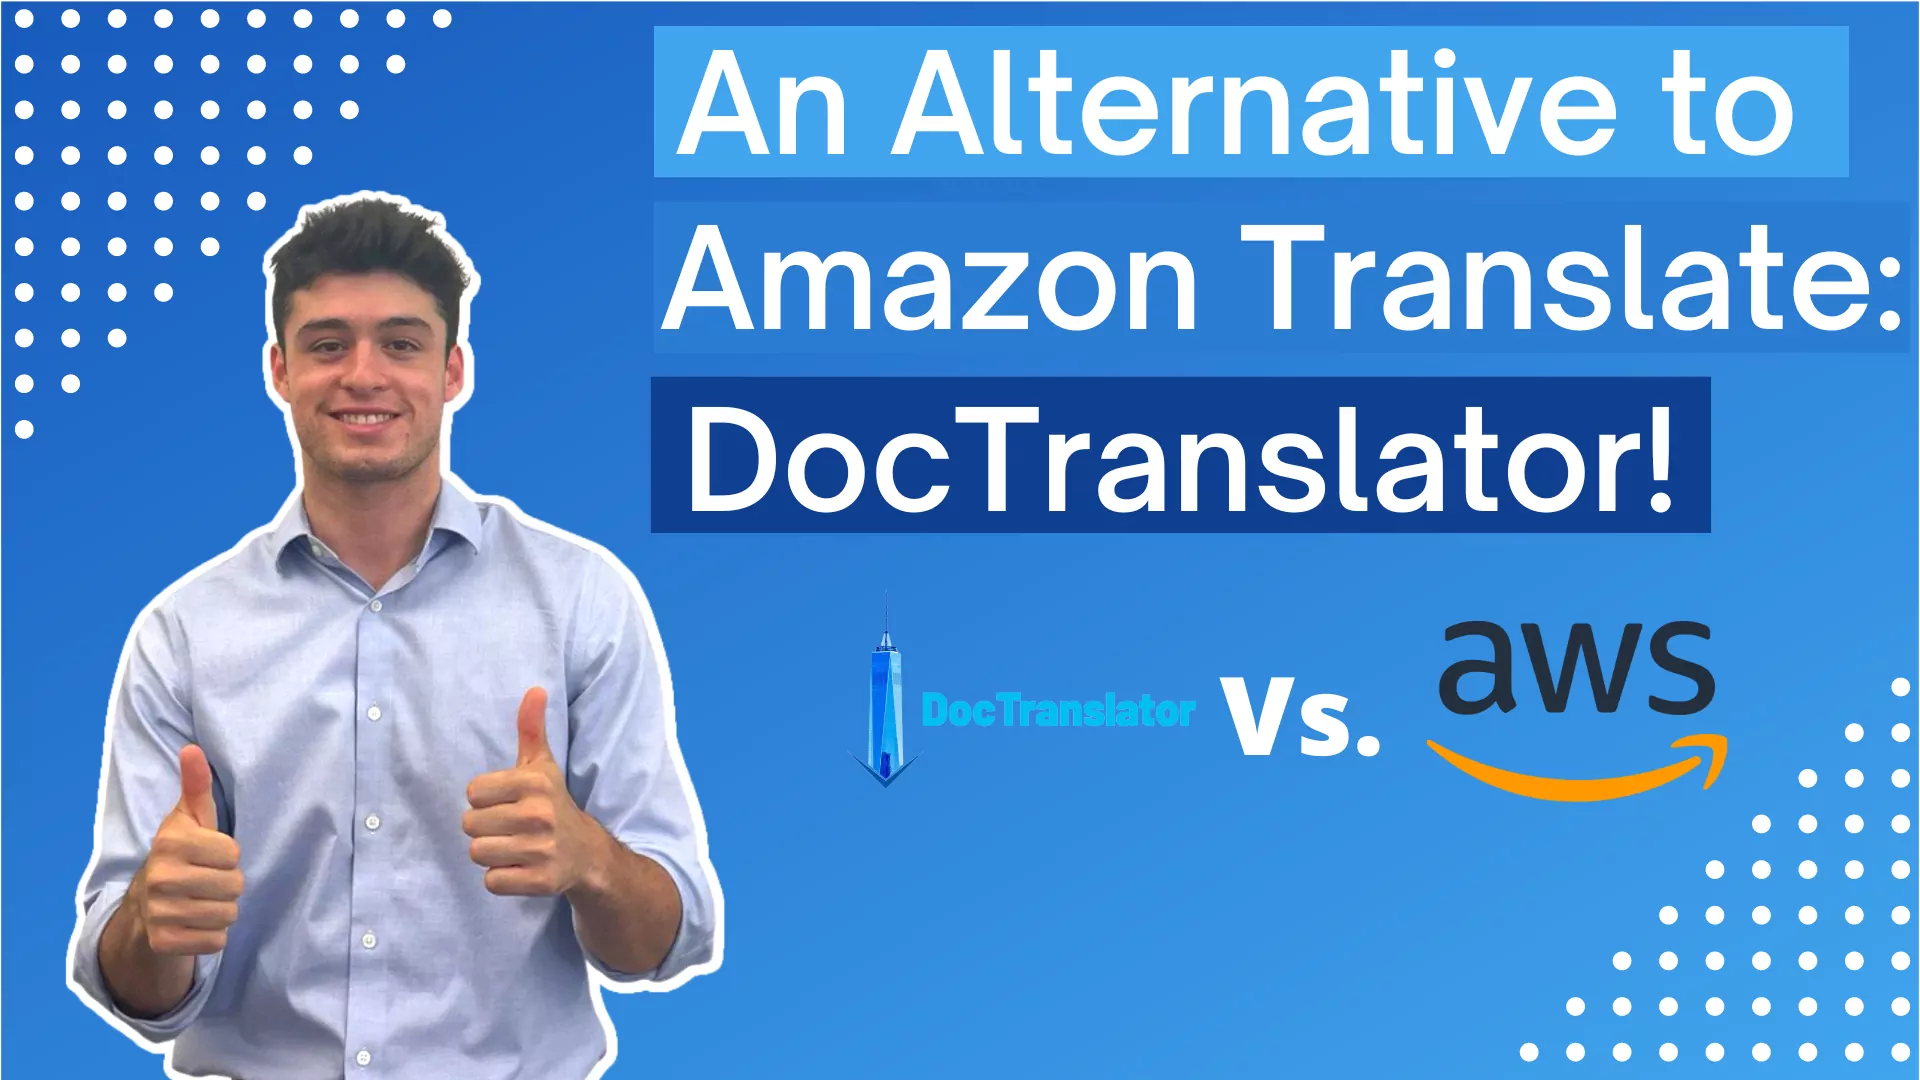 Альтернатива Amazon Translate: больше функций, лучшие результаты